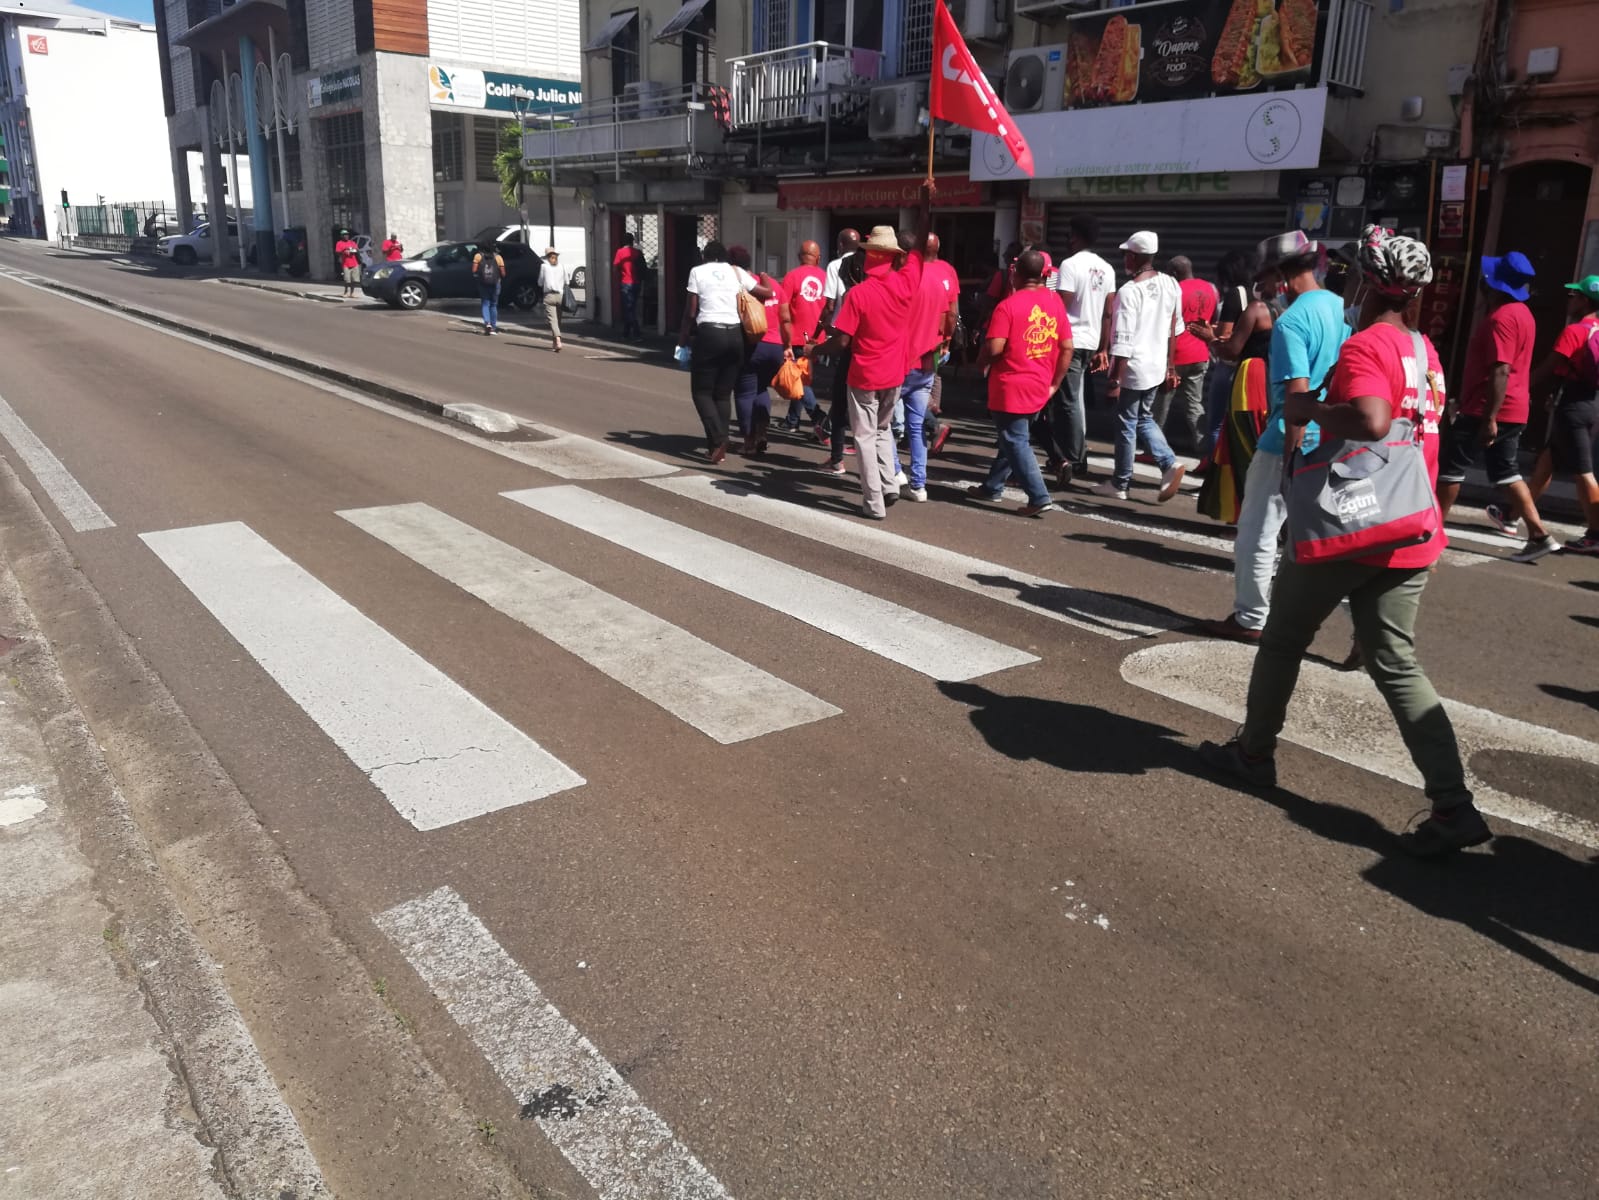     Grève générale : les négociations à l'arrêt en Martinique

